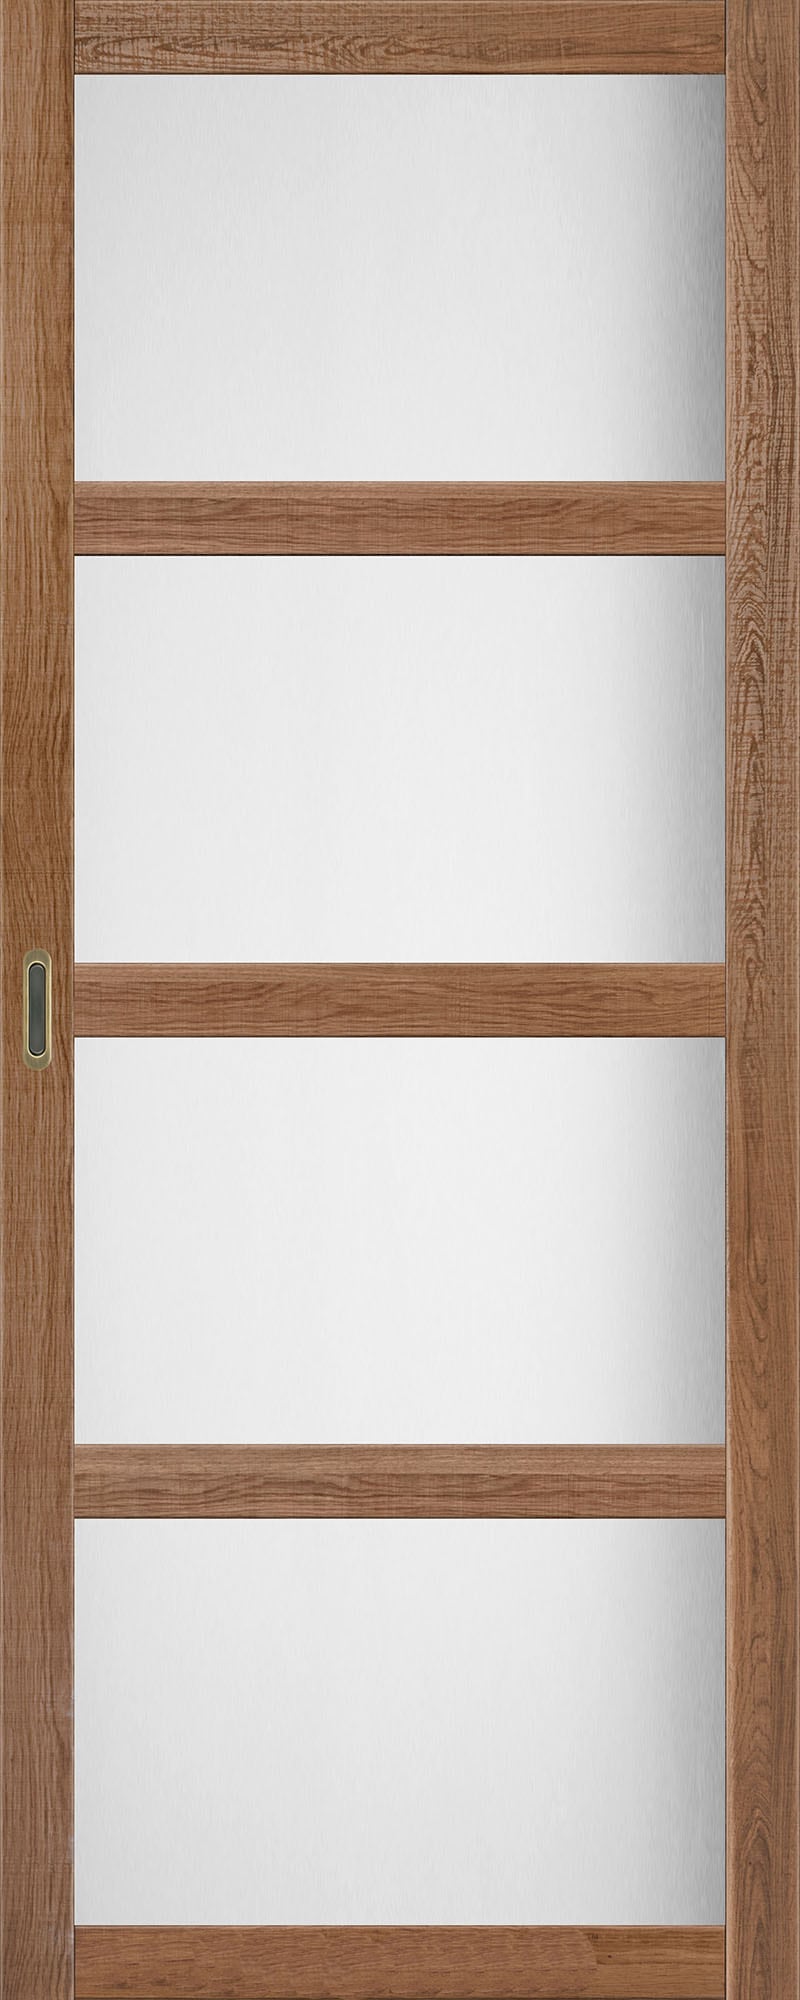 Розсувні двері на кухню BL-01 дуб браш, скло сатин